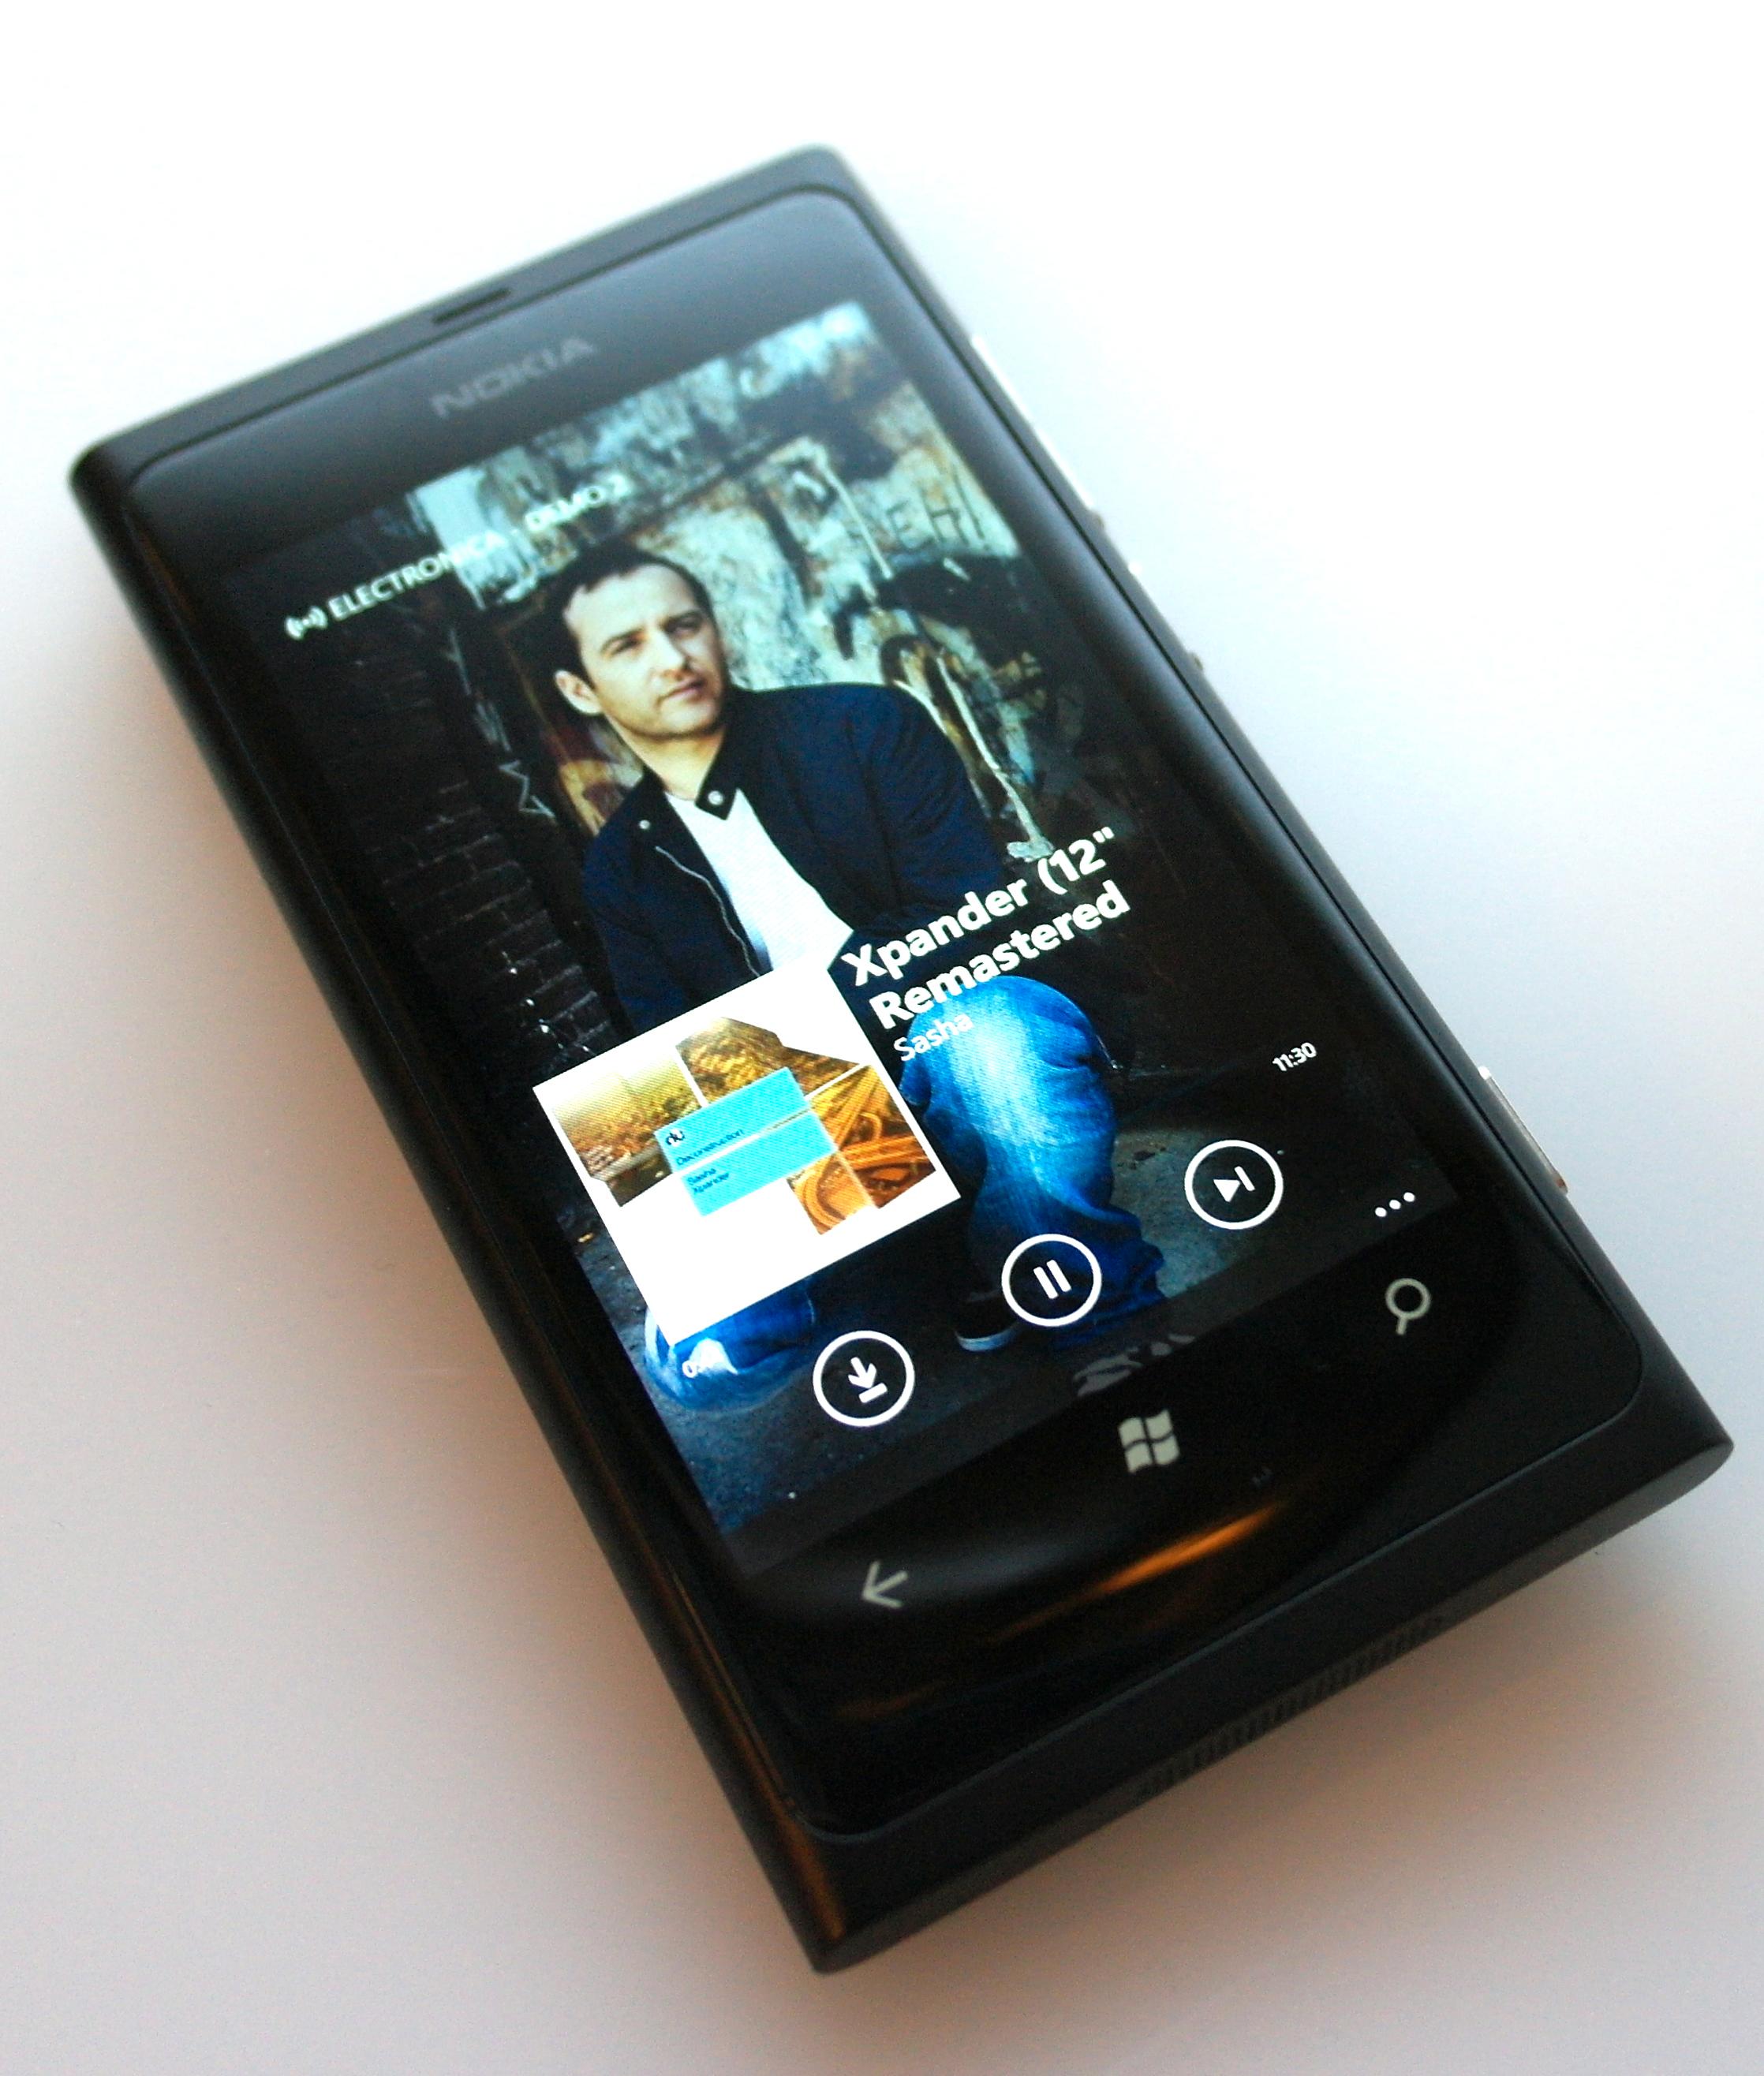 Slik ser Nokias musikktjeneste ut på Windows Phone 7.5.